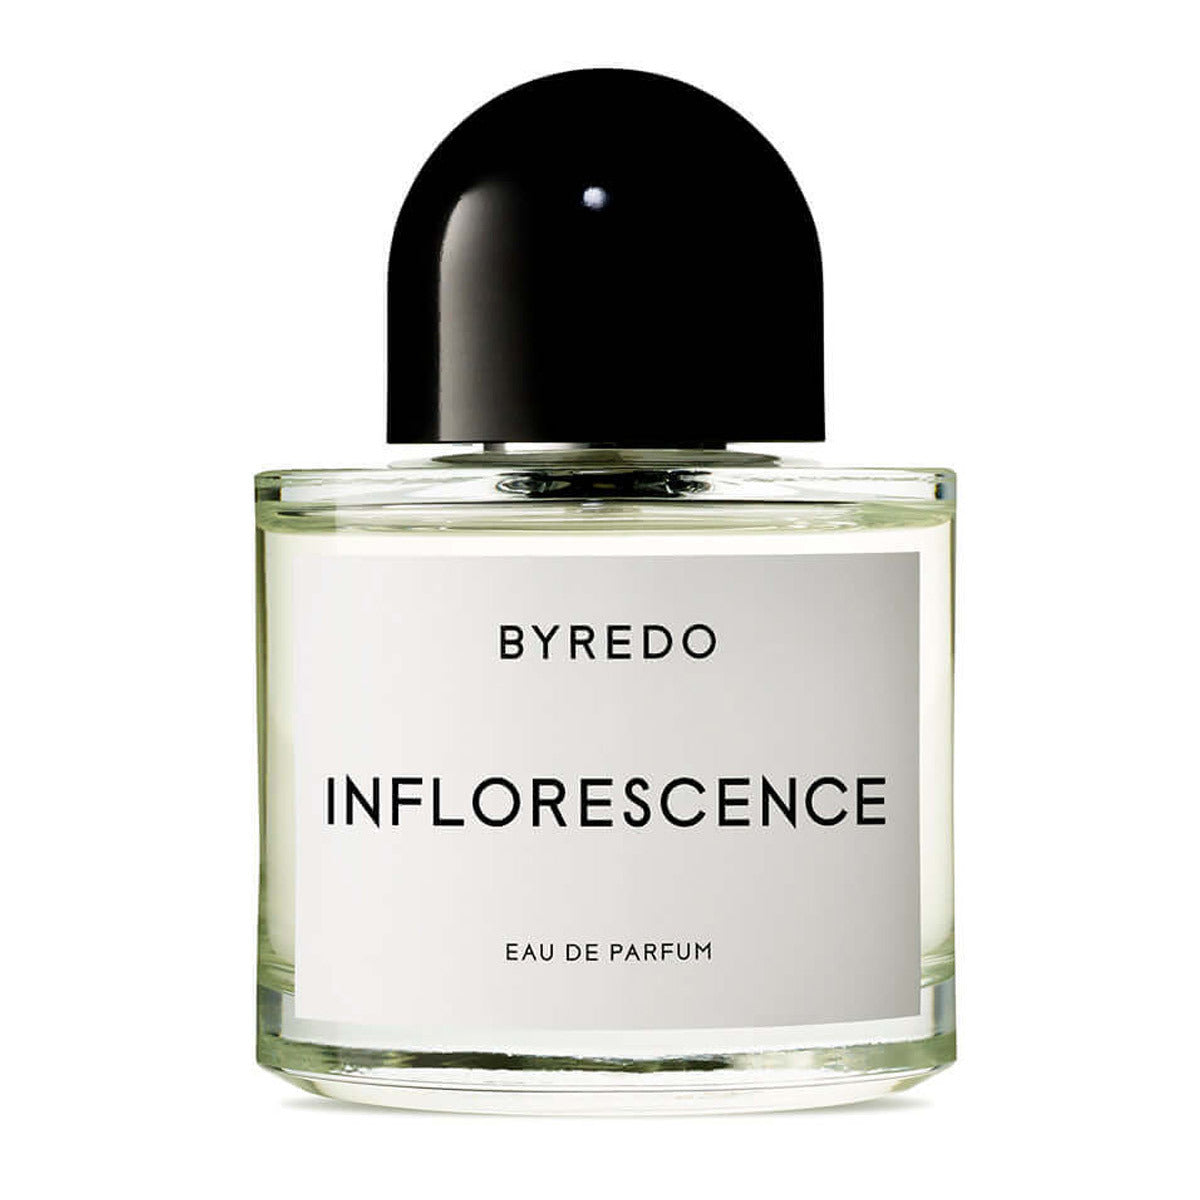 Primary image of Inflorescence Eau de Parfum